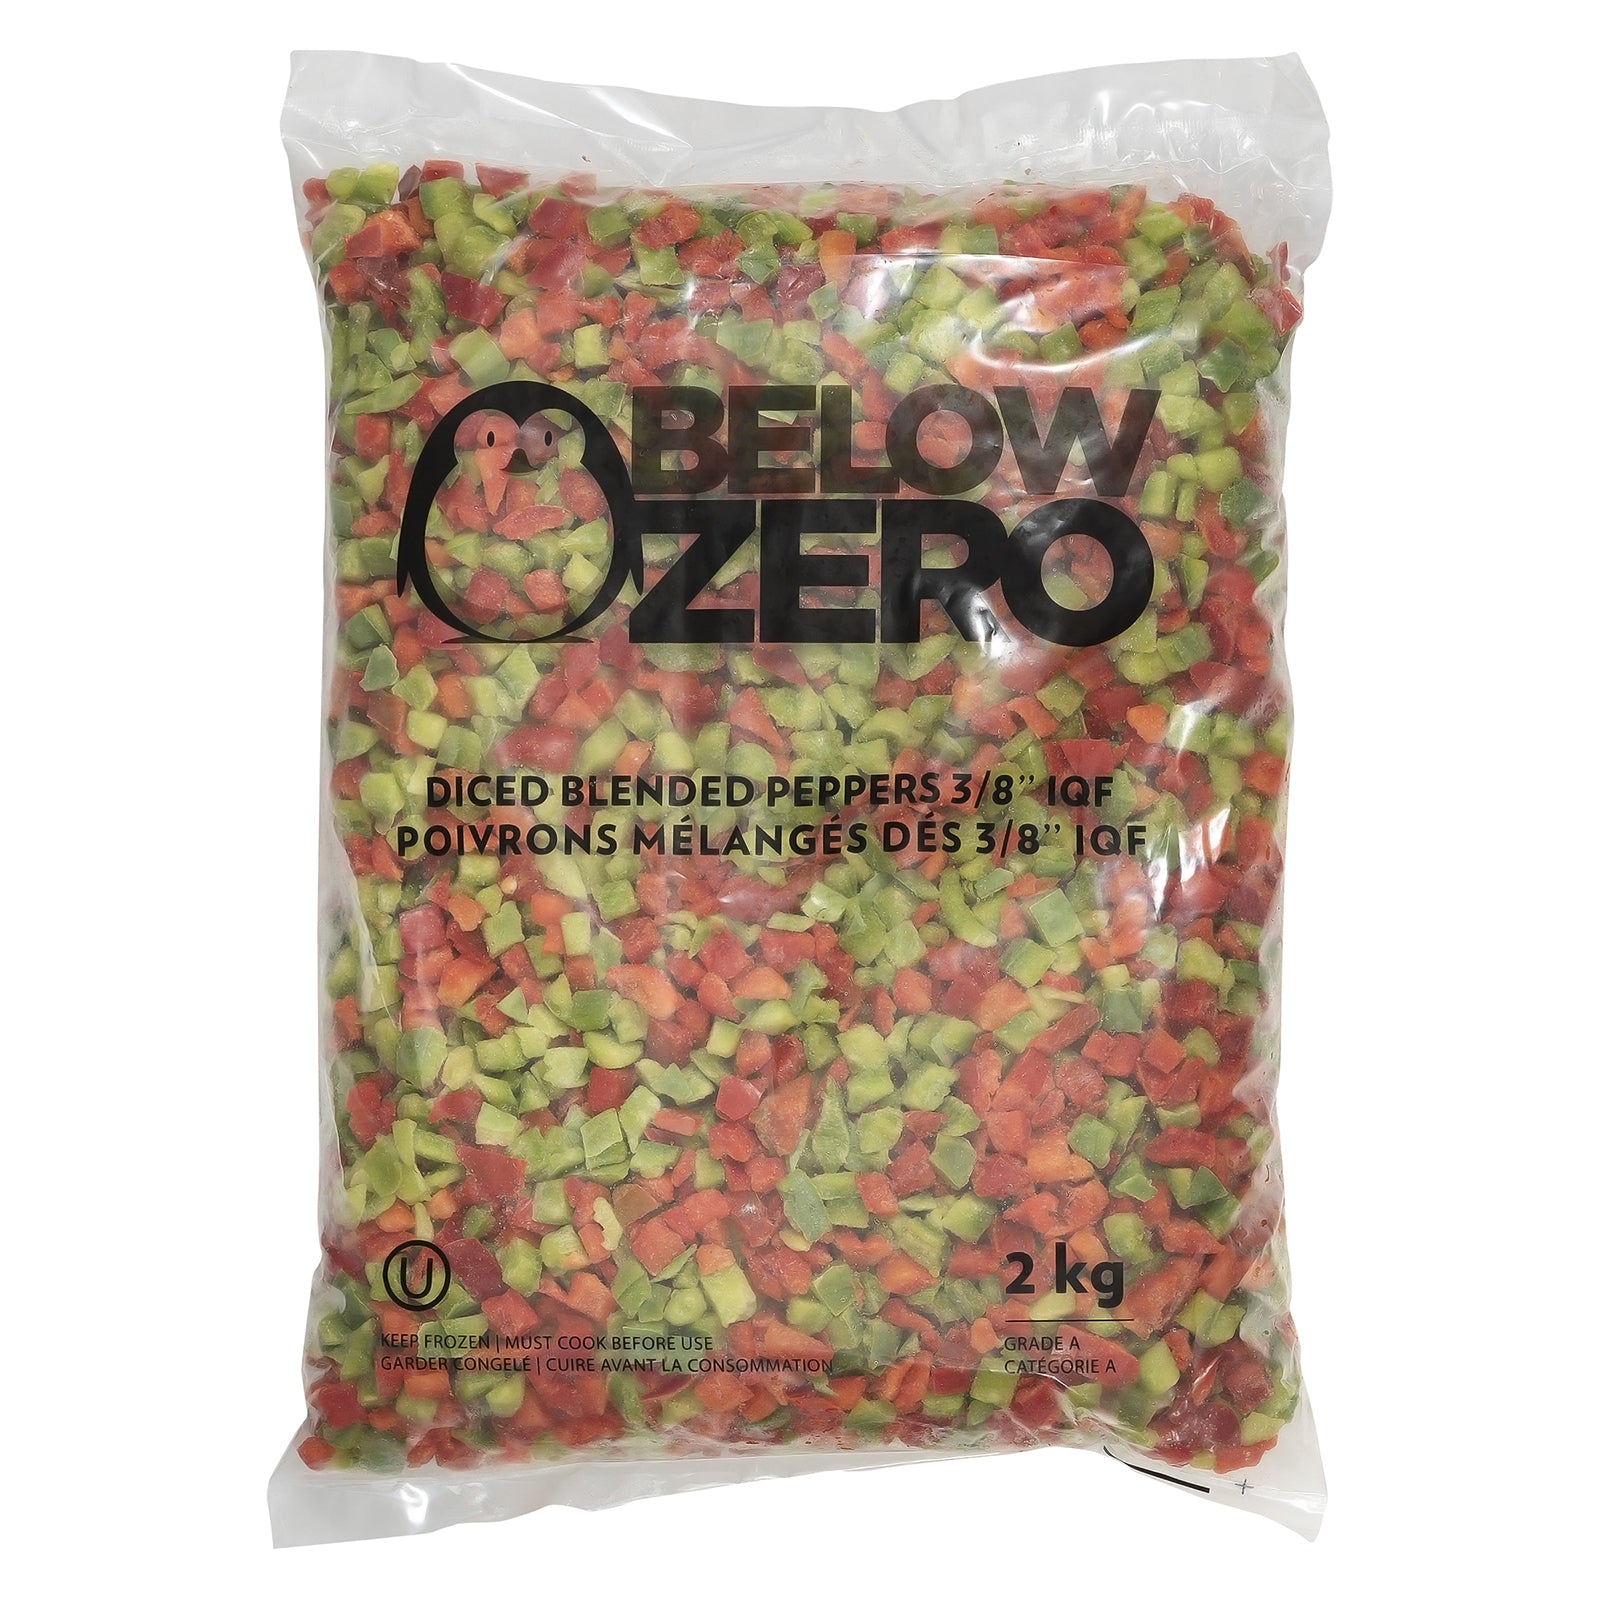 BELOW ZERO Diced mixed peppers